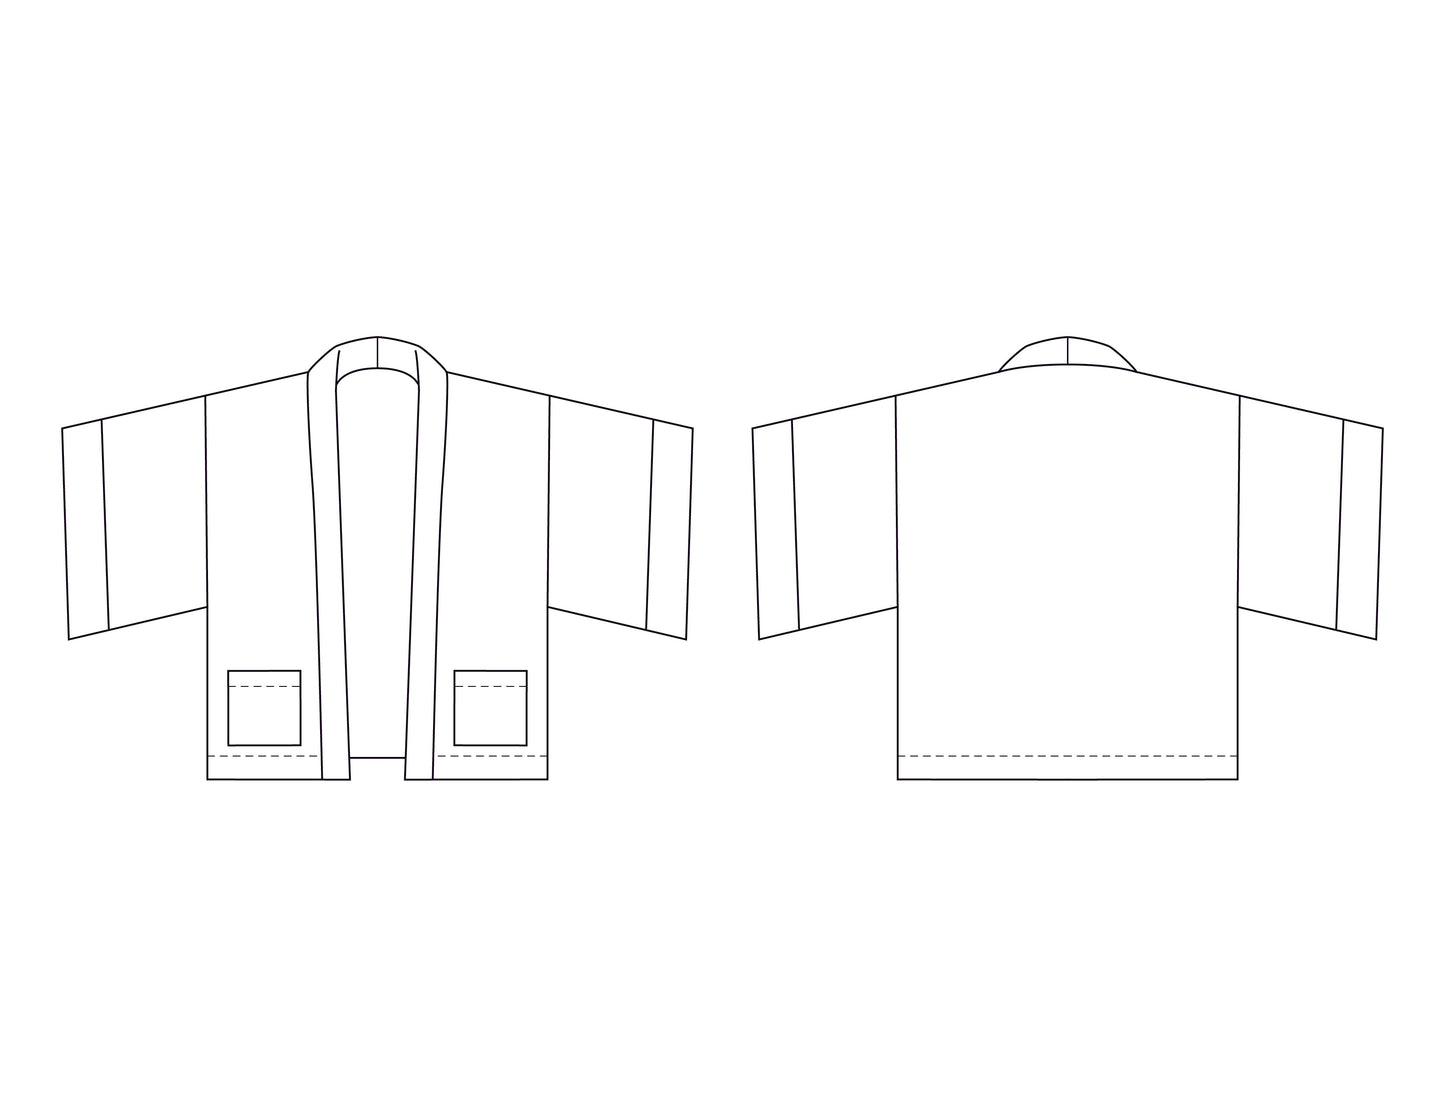 Julianne Fleece Jacket Pattern - Digital Download (PDF)